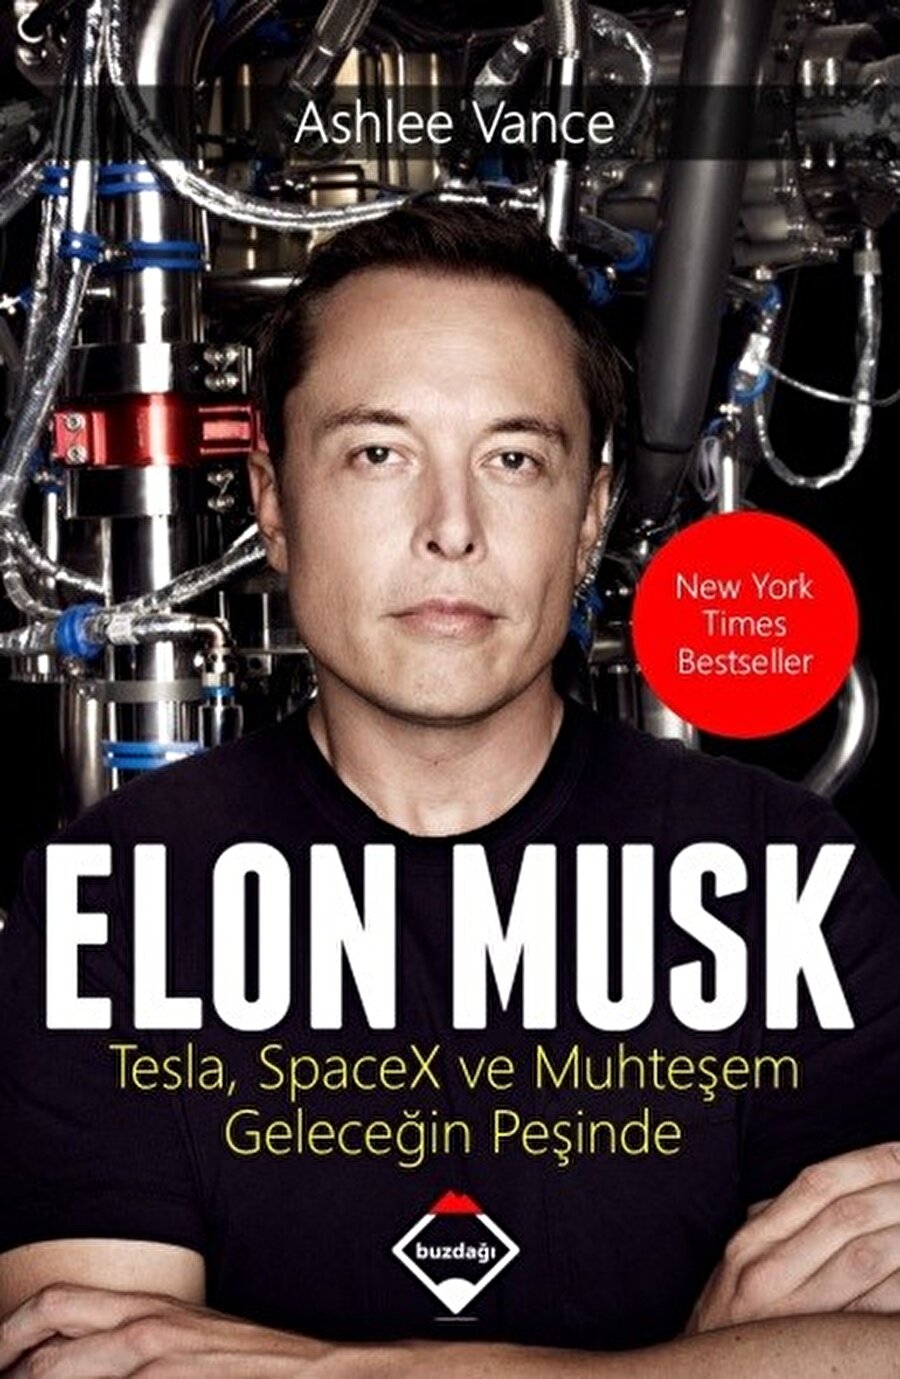  Elon Musk / Tesla SpaceX ve Muhteşem Geleceğin Peşinde
Yazar : Ashlee Vance
Sayfa Sayısı: 448
Baskı Yılı: 2016

 Bu kitap; 1971 doğumlu genç bir girişimcinin şirketleri ile dünyadaki otomotiv, uzay-havacılık ve enerji sektörlerindeki yerleşik düzene meydan okumasının sıra dışı hikâyesidir. Elon Musk, X.com ve PayPal'in kurucularındandır ve sonraki dönemde Tesla ile sadece elektrikle giden muhteşem otomobiller üretmiştir. SpaceX ile uzay taşımacılığının maliyetlerini çok büyük oranda düşürerek dünya devlerine meydan okumuş ve yakın gelecekte Mars'a insan yollayabilecek en muhtemel şirketi kurmuştur. Ayrıca ABD'deki en büyük güneş enerjisi şirketi SolarCity'nin en büyük ortağı ve başkanıdır. Ashlee Vance, 300'e yakın insanla konuşarak ve Elon Musk ile 30 saatten fazla birebir görüşme yaparak bu çarpıcı ve ilham verici hayat hikâyesini okurlarla buluşturuyor.